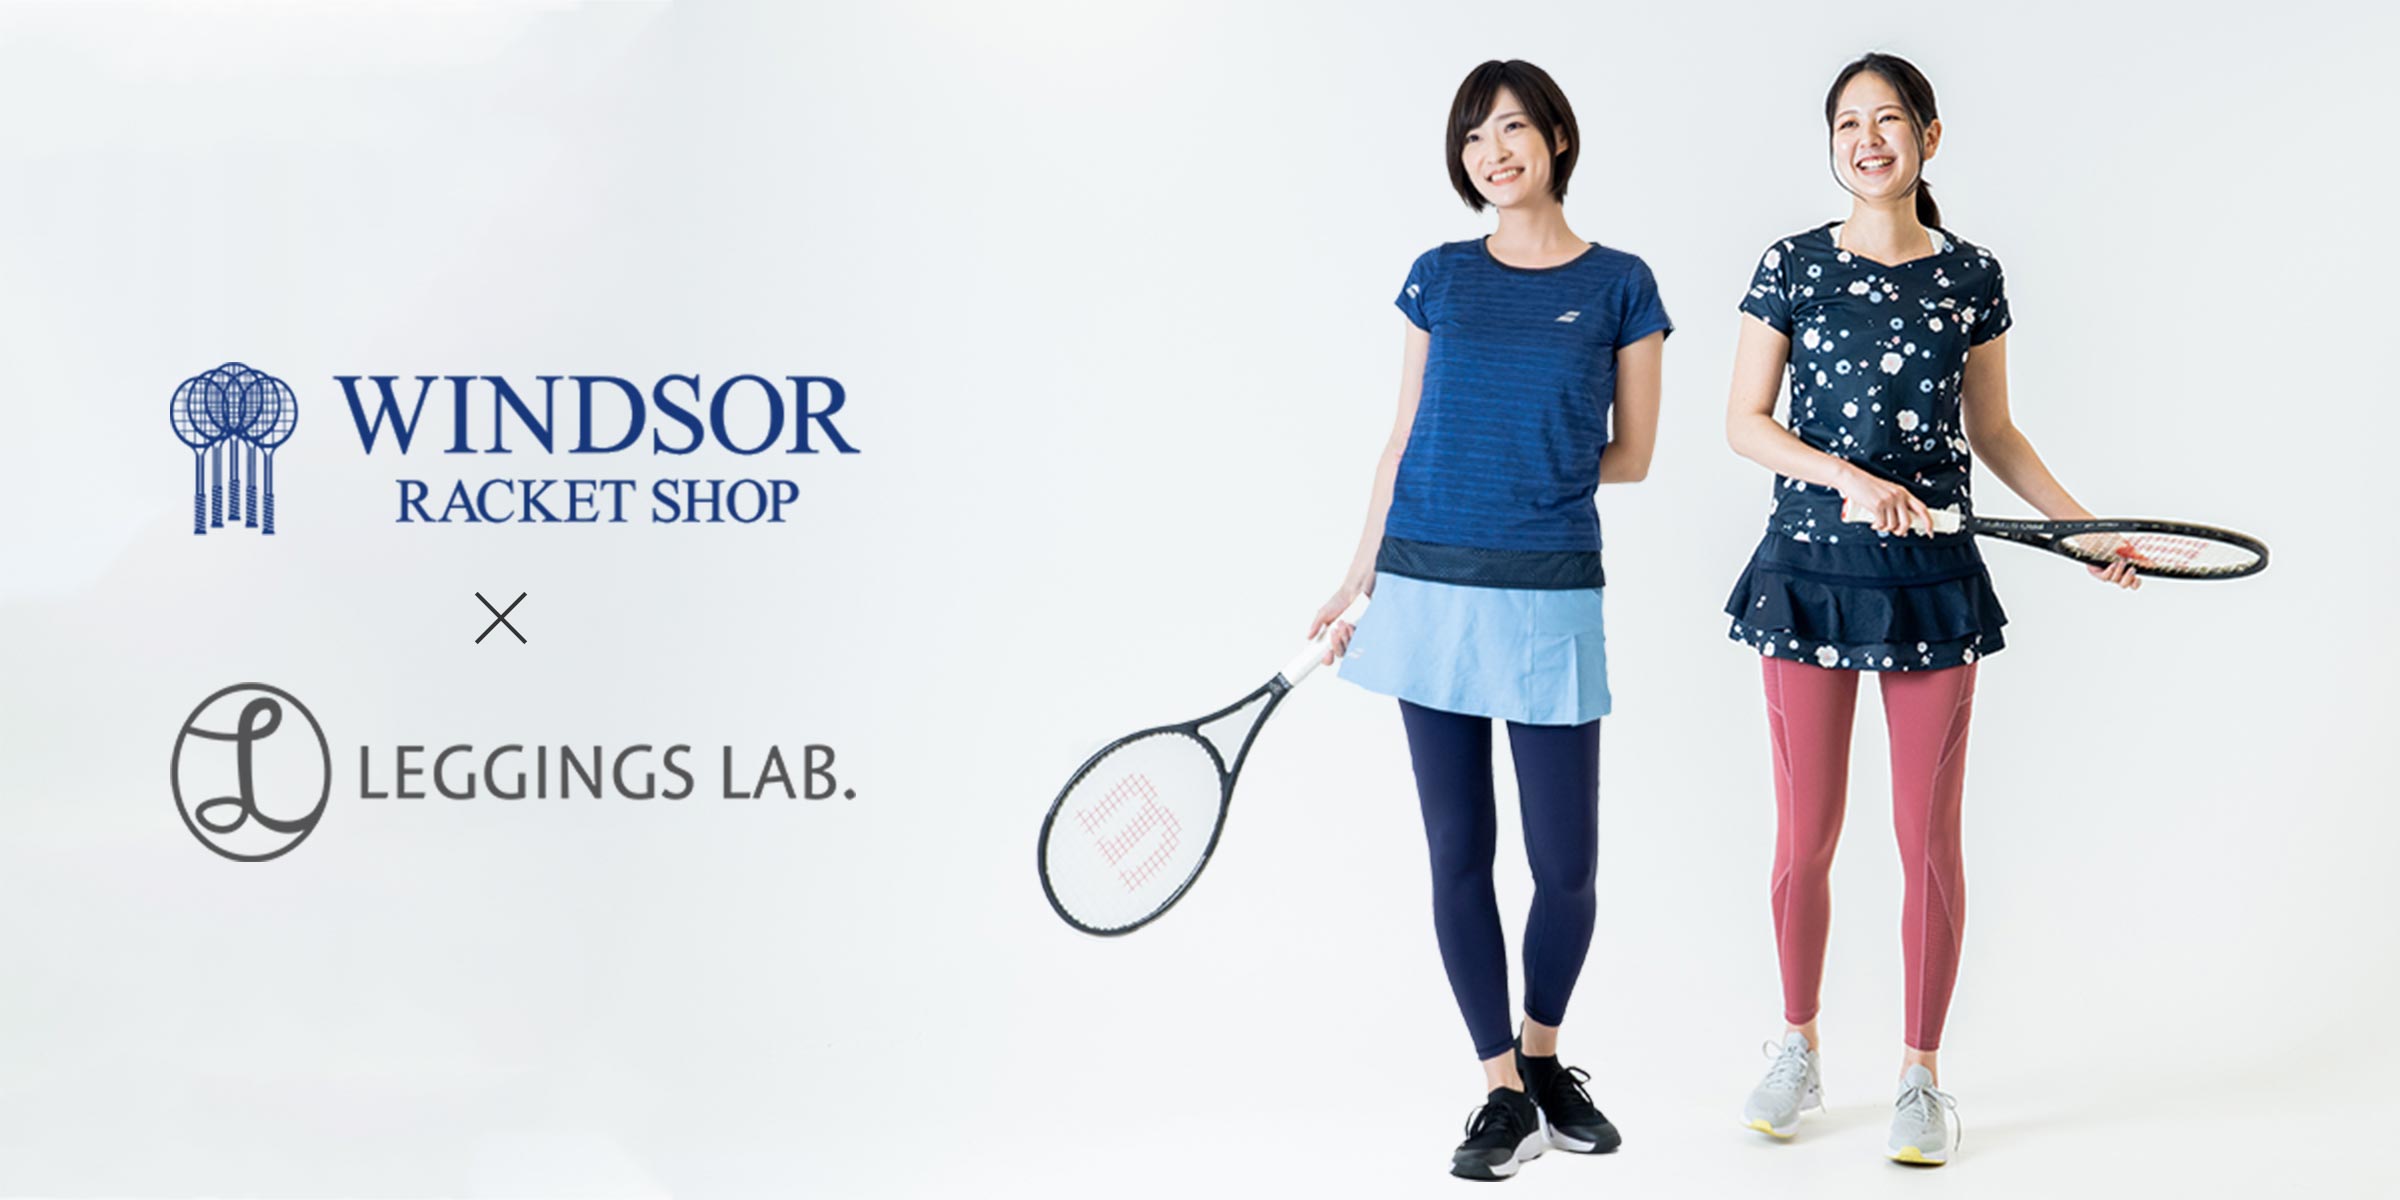 Windsor×Leggings Lab.Presents テニスウェアに大革命!?くすみレギンスを使ったテニスコーデのご紹介 ～Babolat編～